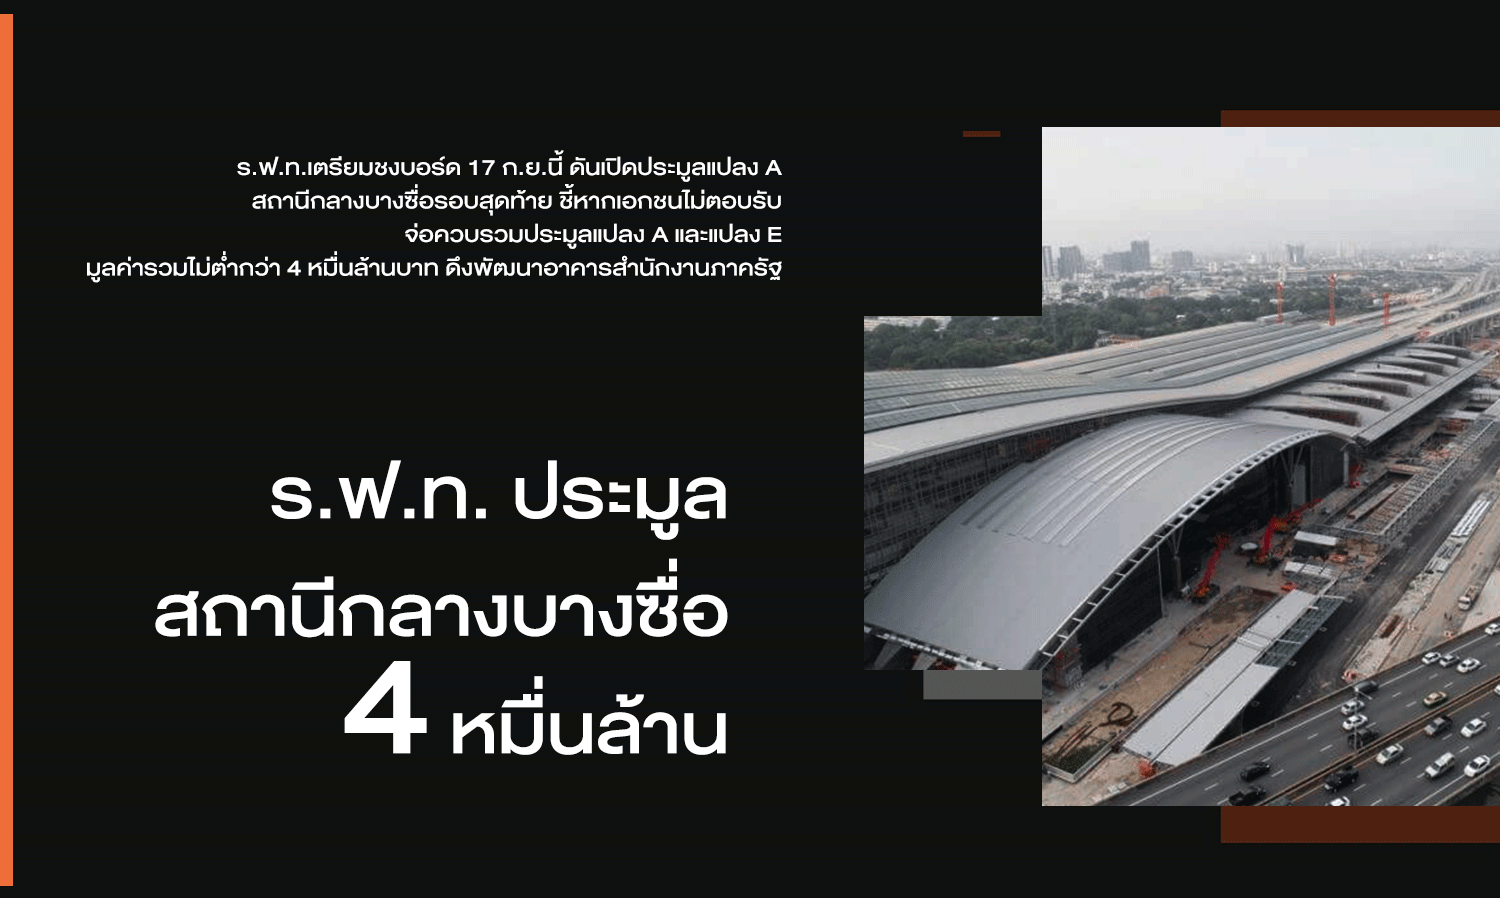 สถานีกลางบางซื่อ - 1 / สถานีกลางบางซื่อ ก่อสร้างเกือบแล้วเสร็จ 100% พร้อมที่จะเปิดใช้งานจริงในปี 64 โดยสถานีแห่งนี้จะเป็นสถานีรถไฟหลักแห่งใหม่ของไทย